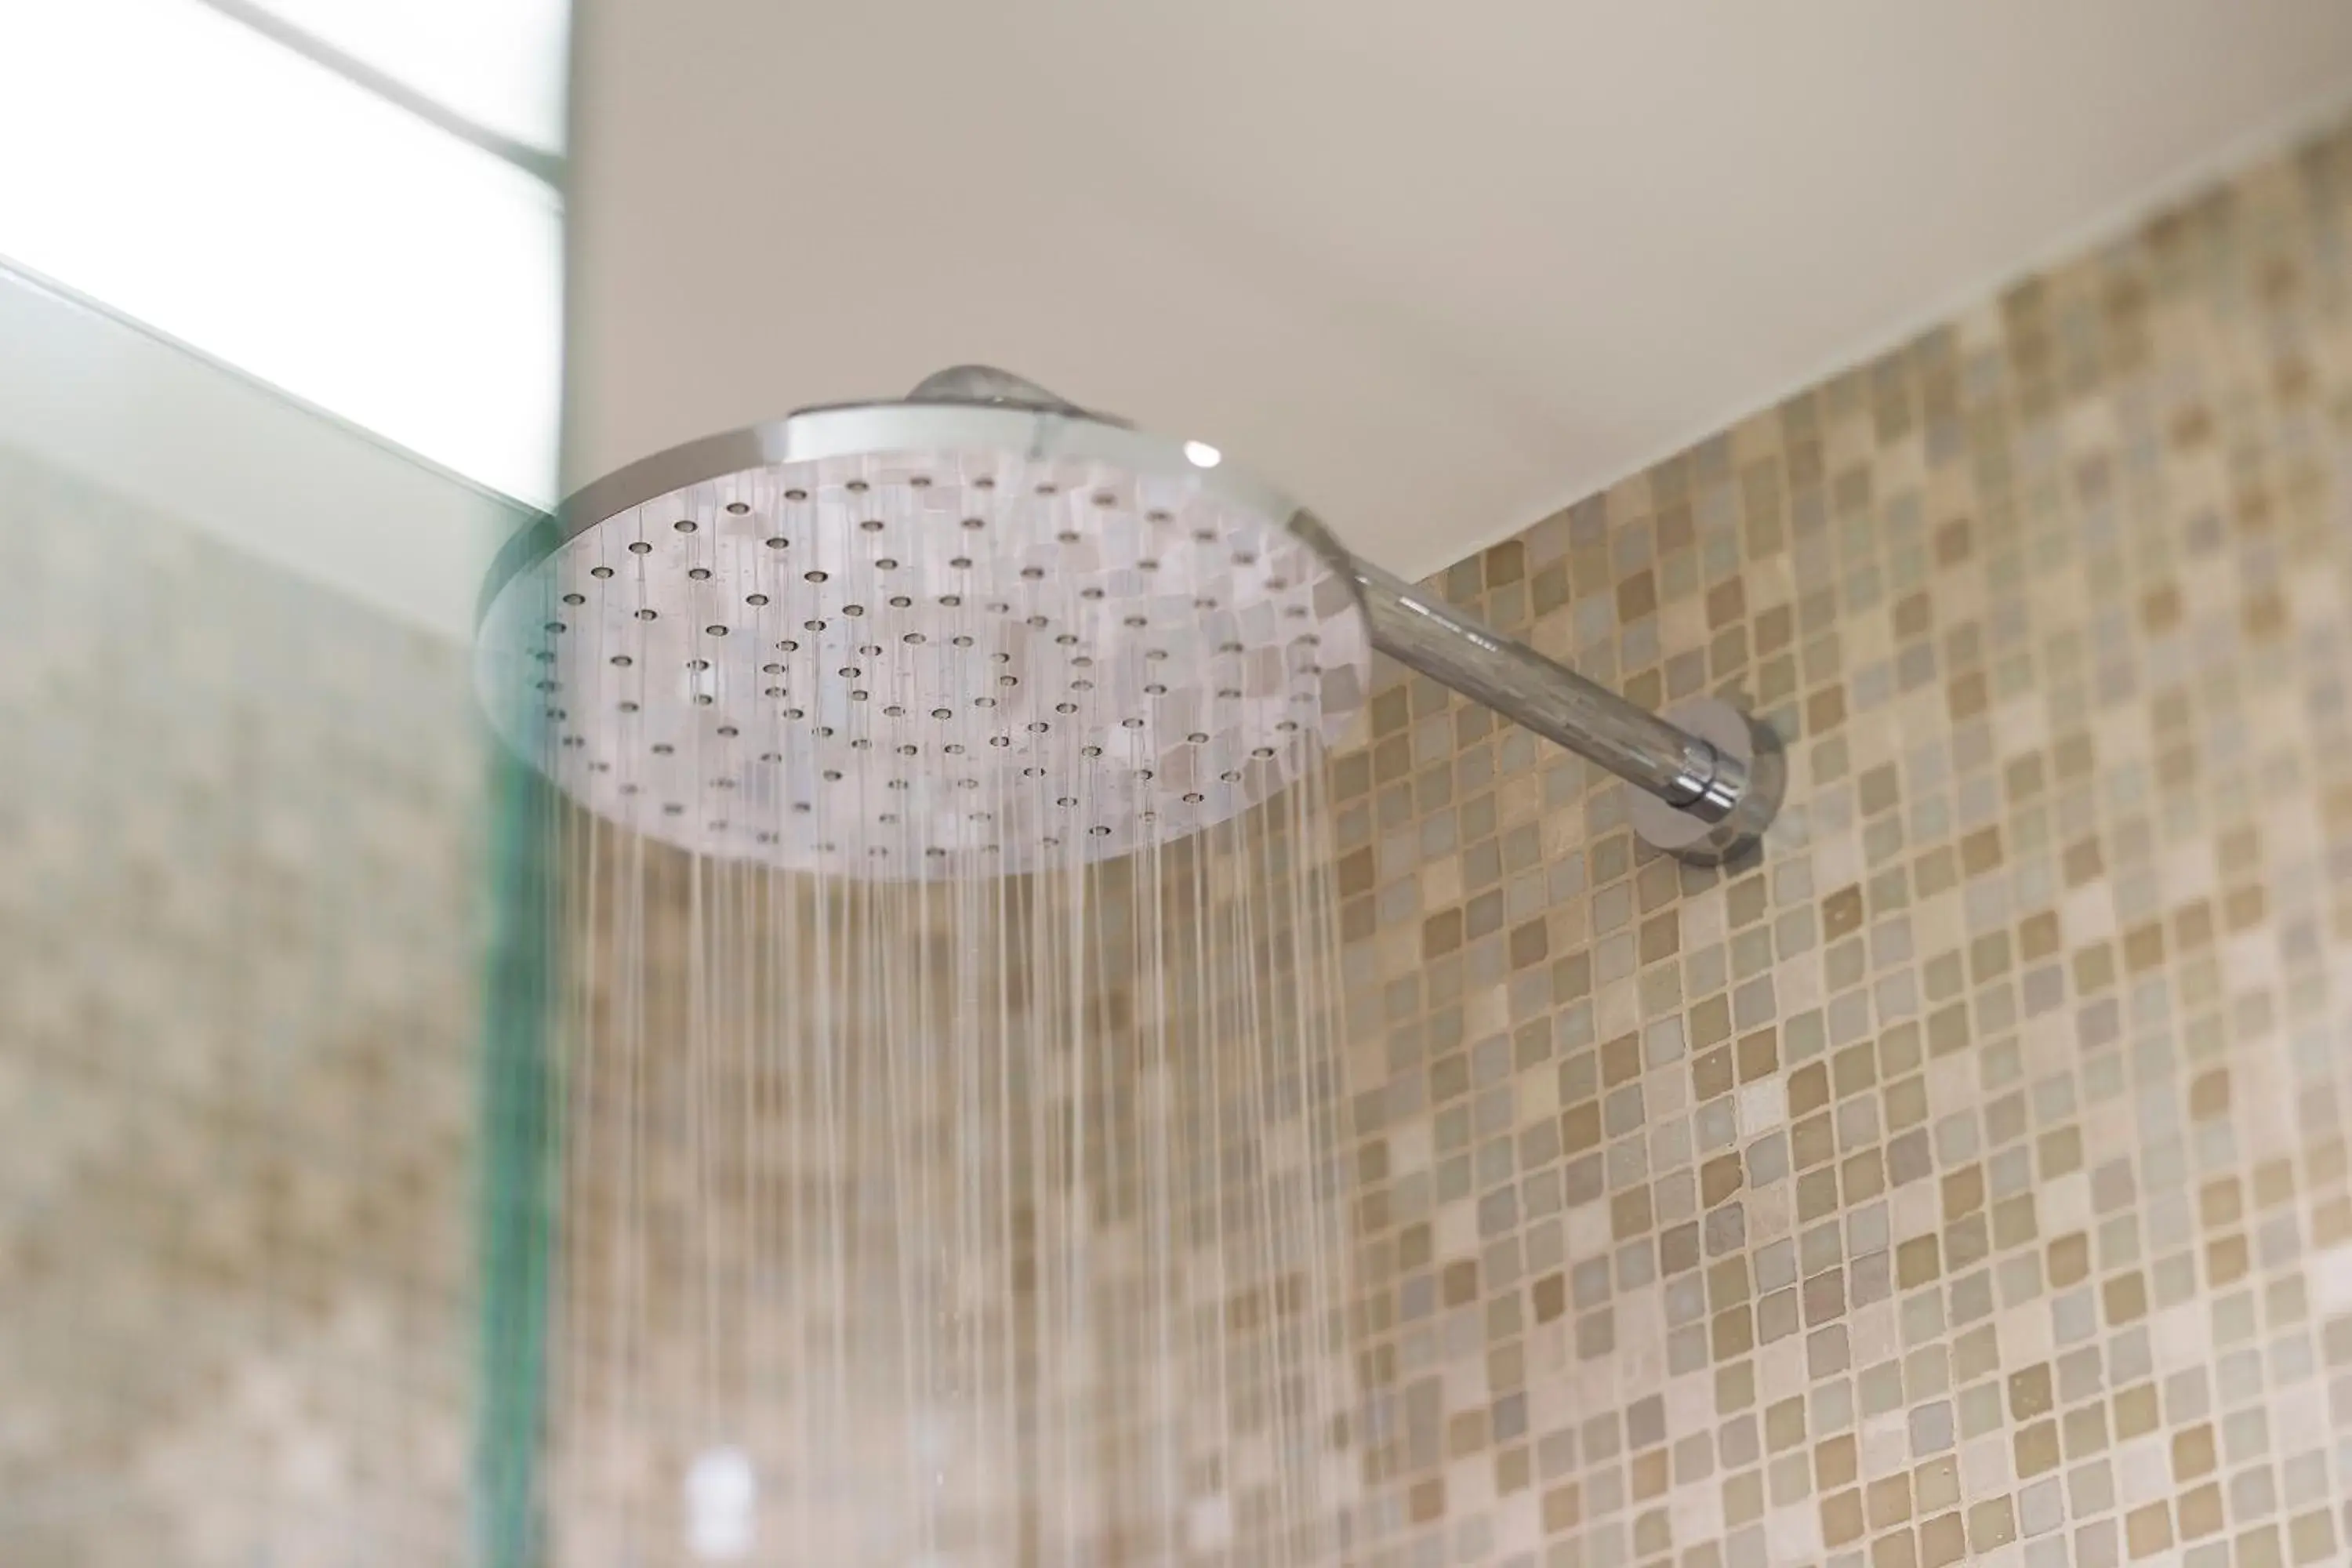 Shower in Hôtel Sophie Germain